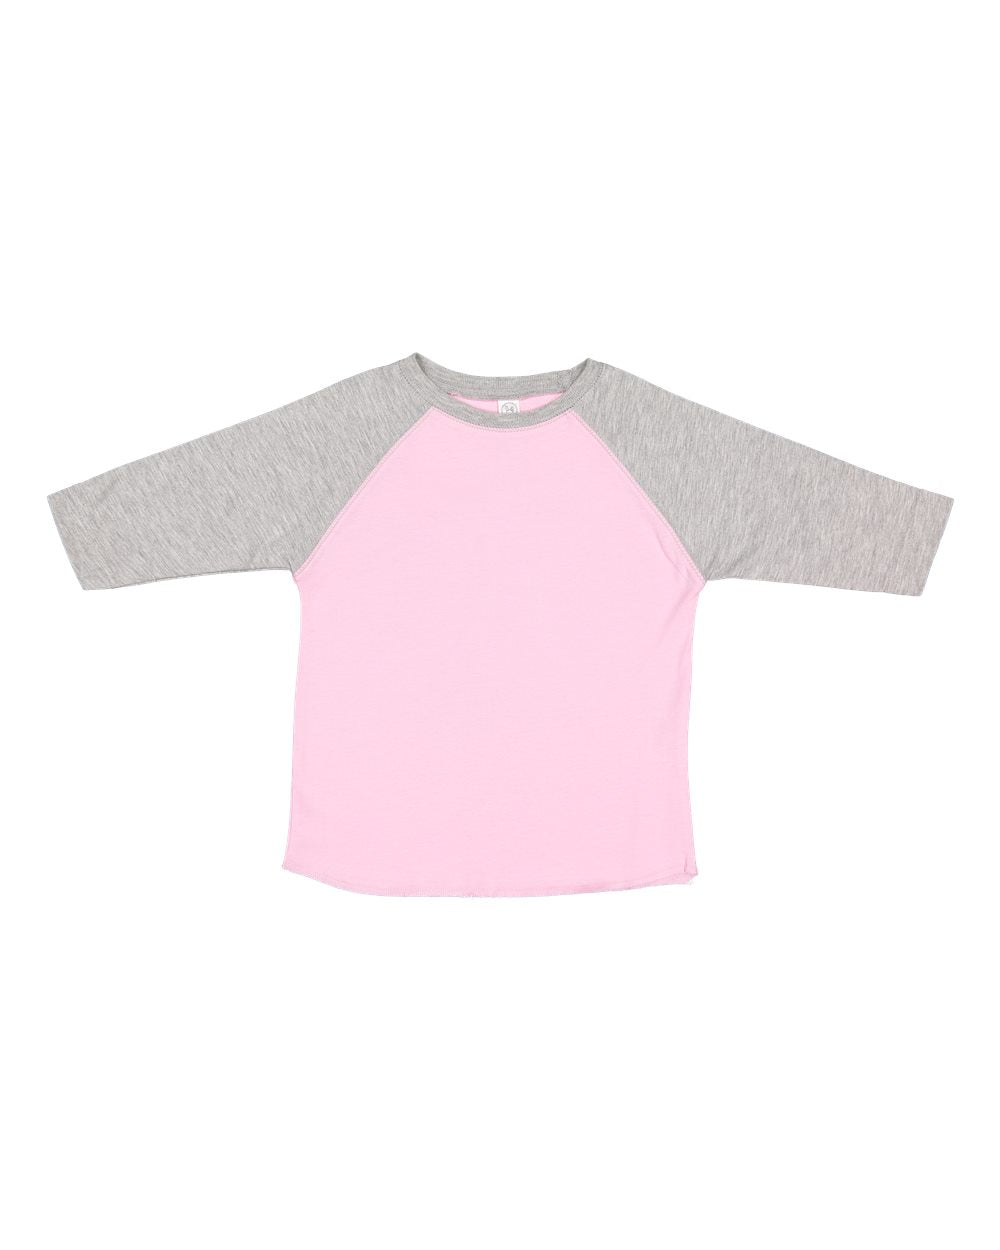 rabbit skins toddler baseball jersey tee pink vintage heather grey